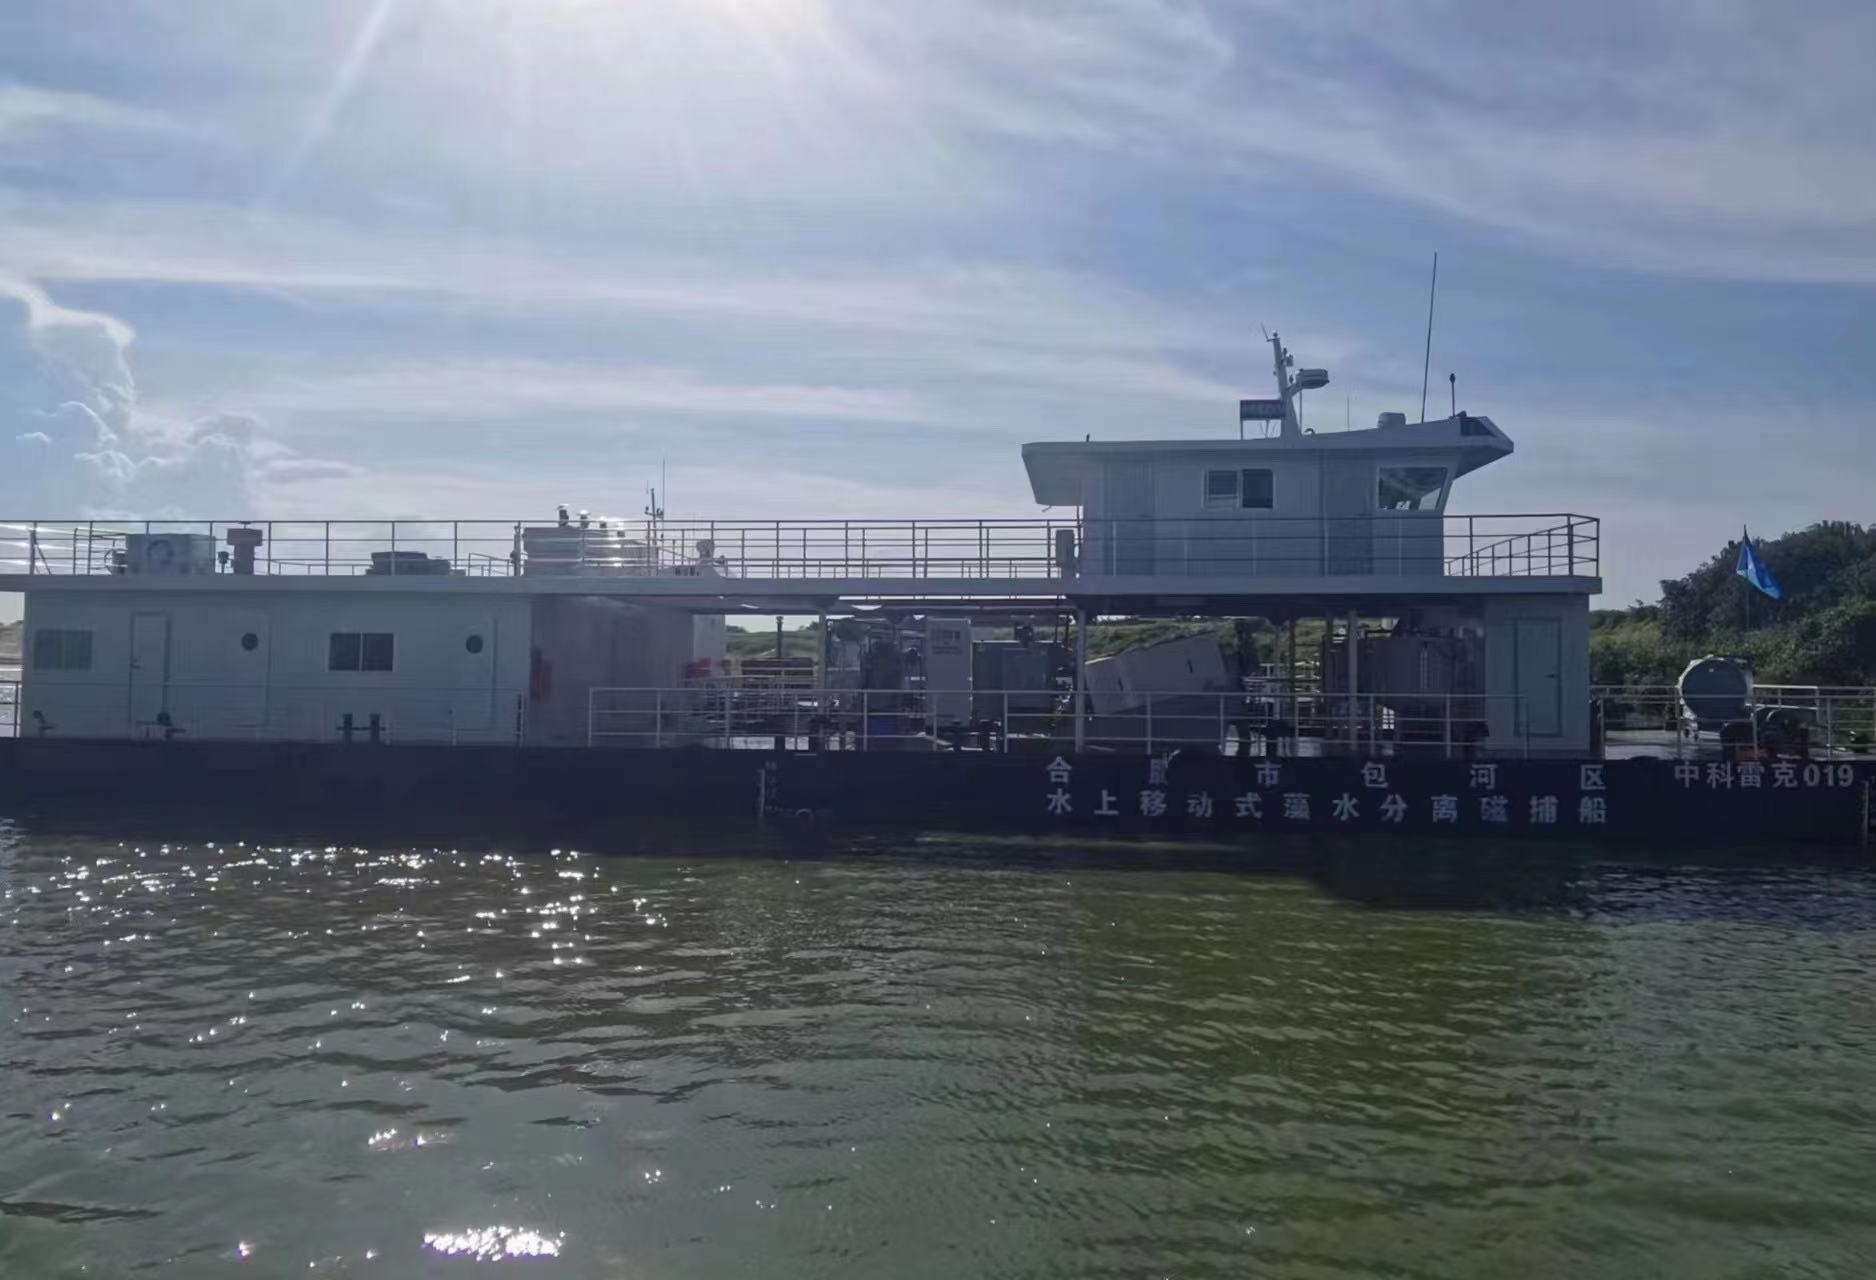 雷克环境成功中标包河区蓝藻磁捕船运维服务项目